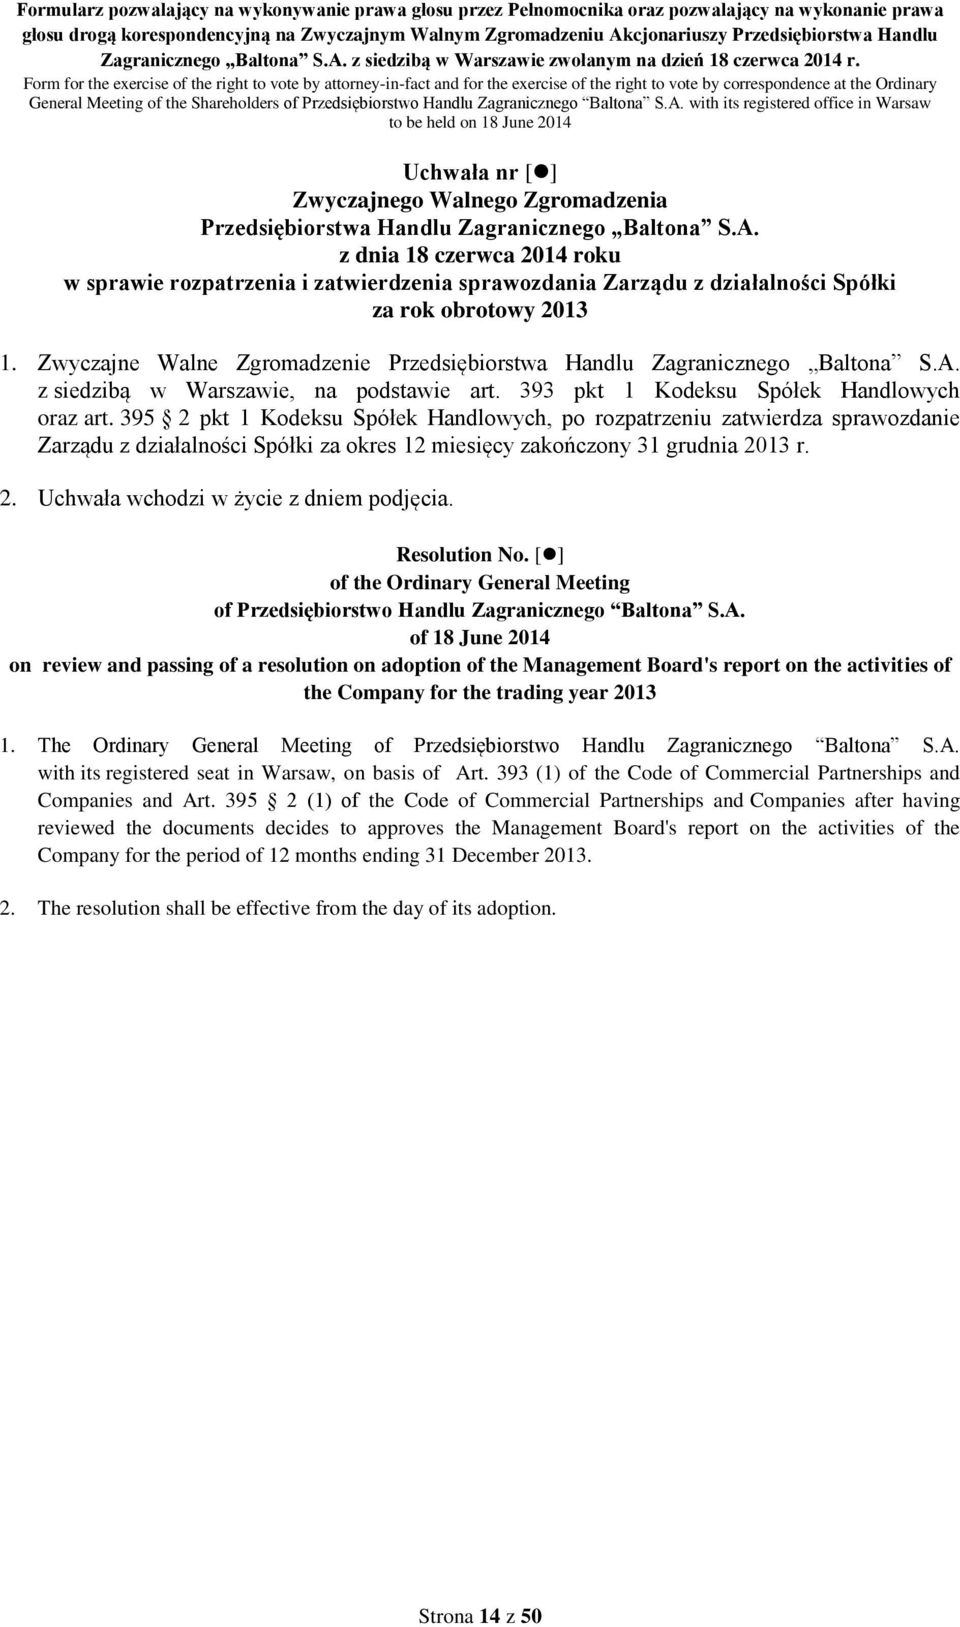 395 2 pkt 1 Kodeksu Spółek Handlowych, po rozpatrzeniu zatwierdza sprawozdanie Zarządu z działalności Spółki za okres 12 miesięcy zakończony 31 grudnia 2013 r. 2. Uchwała wchodzi w życie z dniem podjęcia.